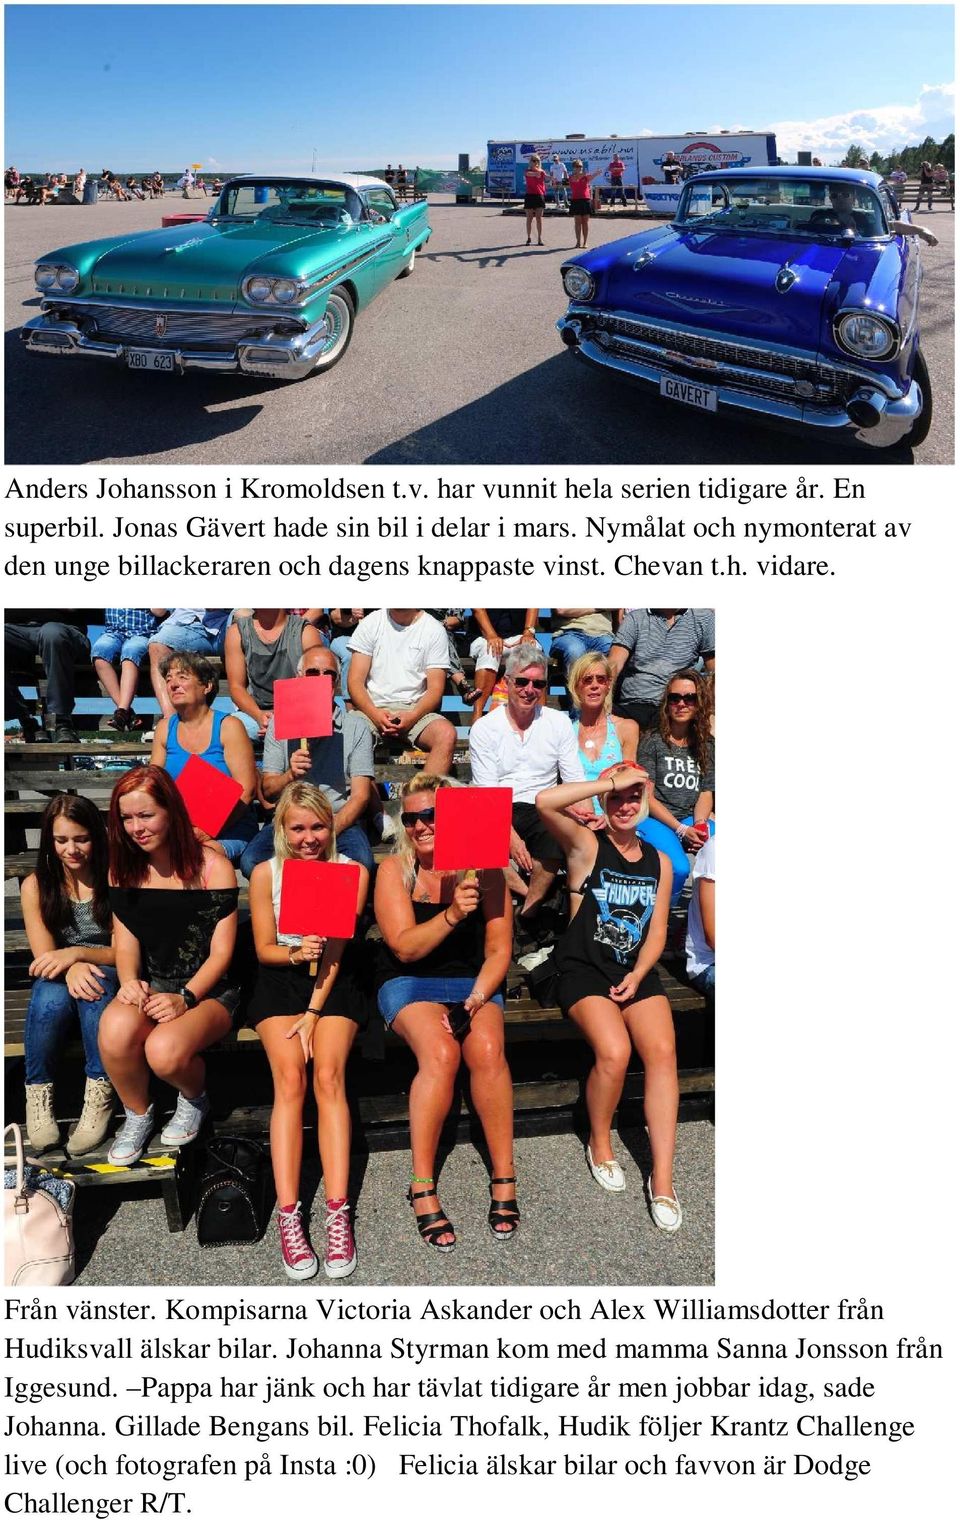 Kompisarna Victoria Askander och Alex Williamsdotter från Hudiksvall älskar bilar. Johanna Styrman kom med mamma Sanna Jonsson från Iggesund.